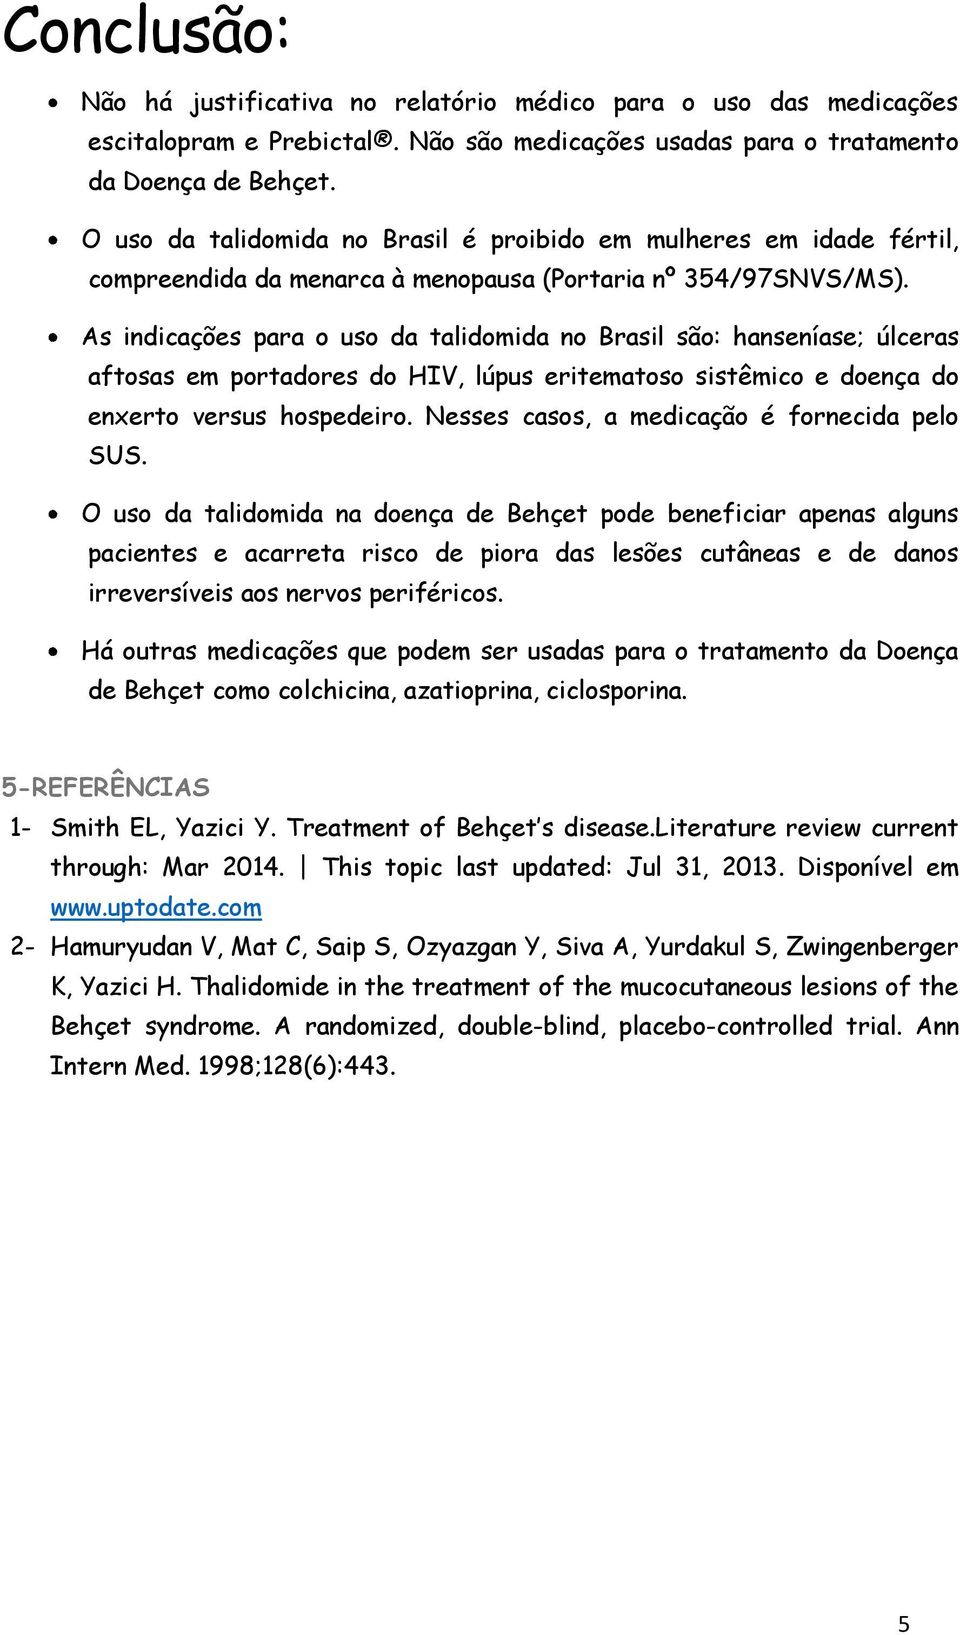 As indicações para o uso da talidomida no Brasil são: hanseníase; úlceras aftosas em portadores do HIV, lúpus eritematoso sistêmico e doença do enxerto versus hospedeiro.